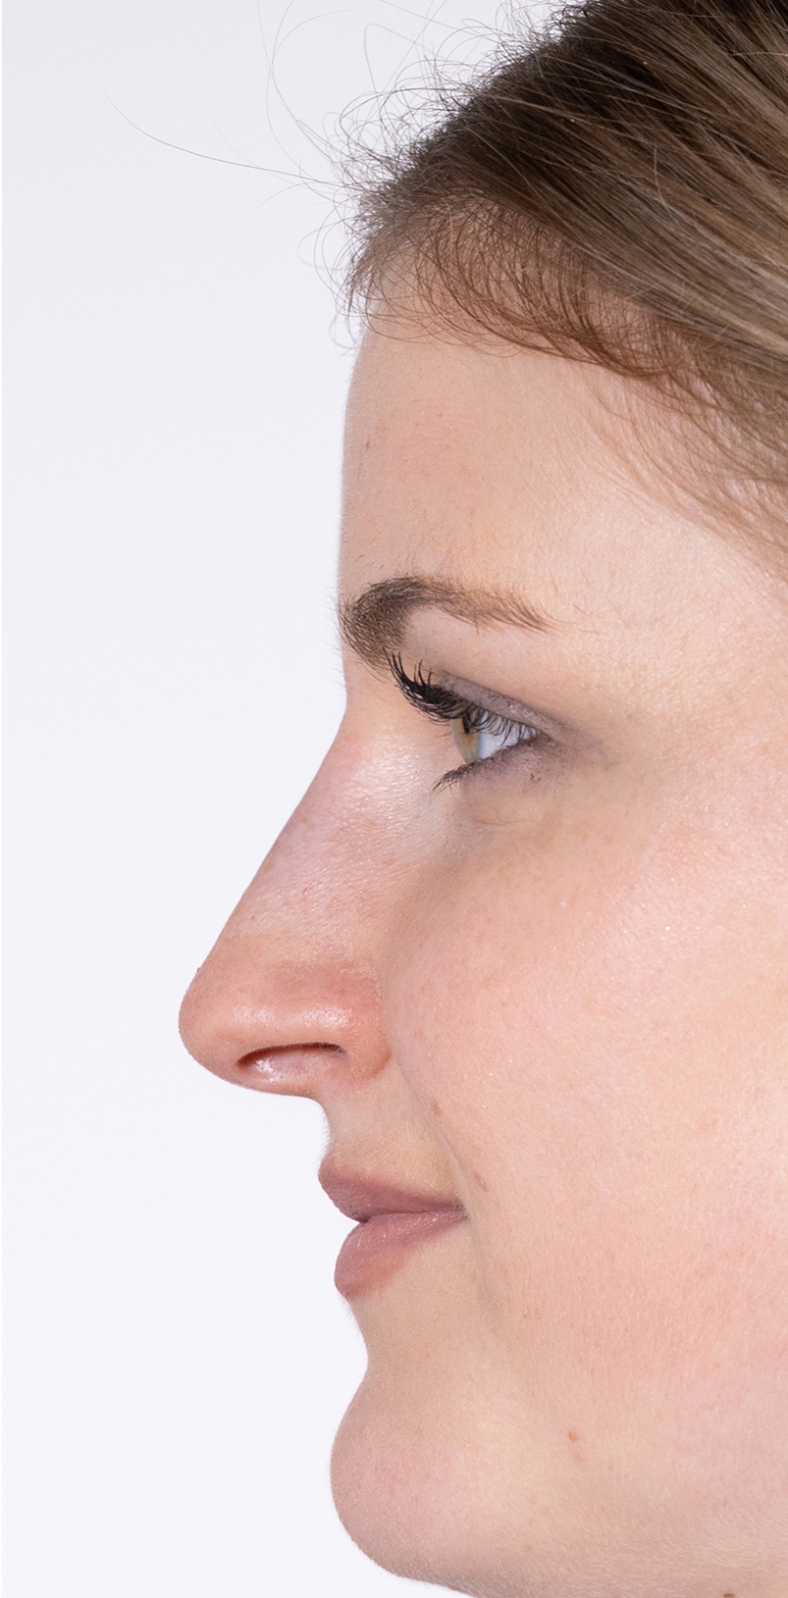 Nekirurška korekcija nosa - poslije, sl. 1 2022